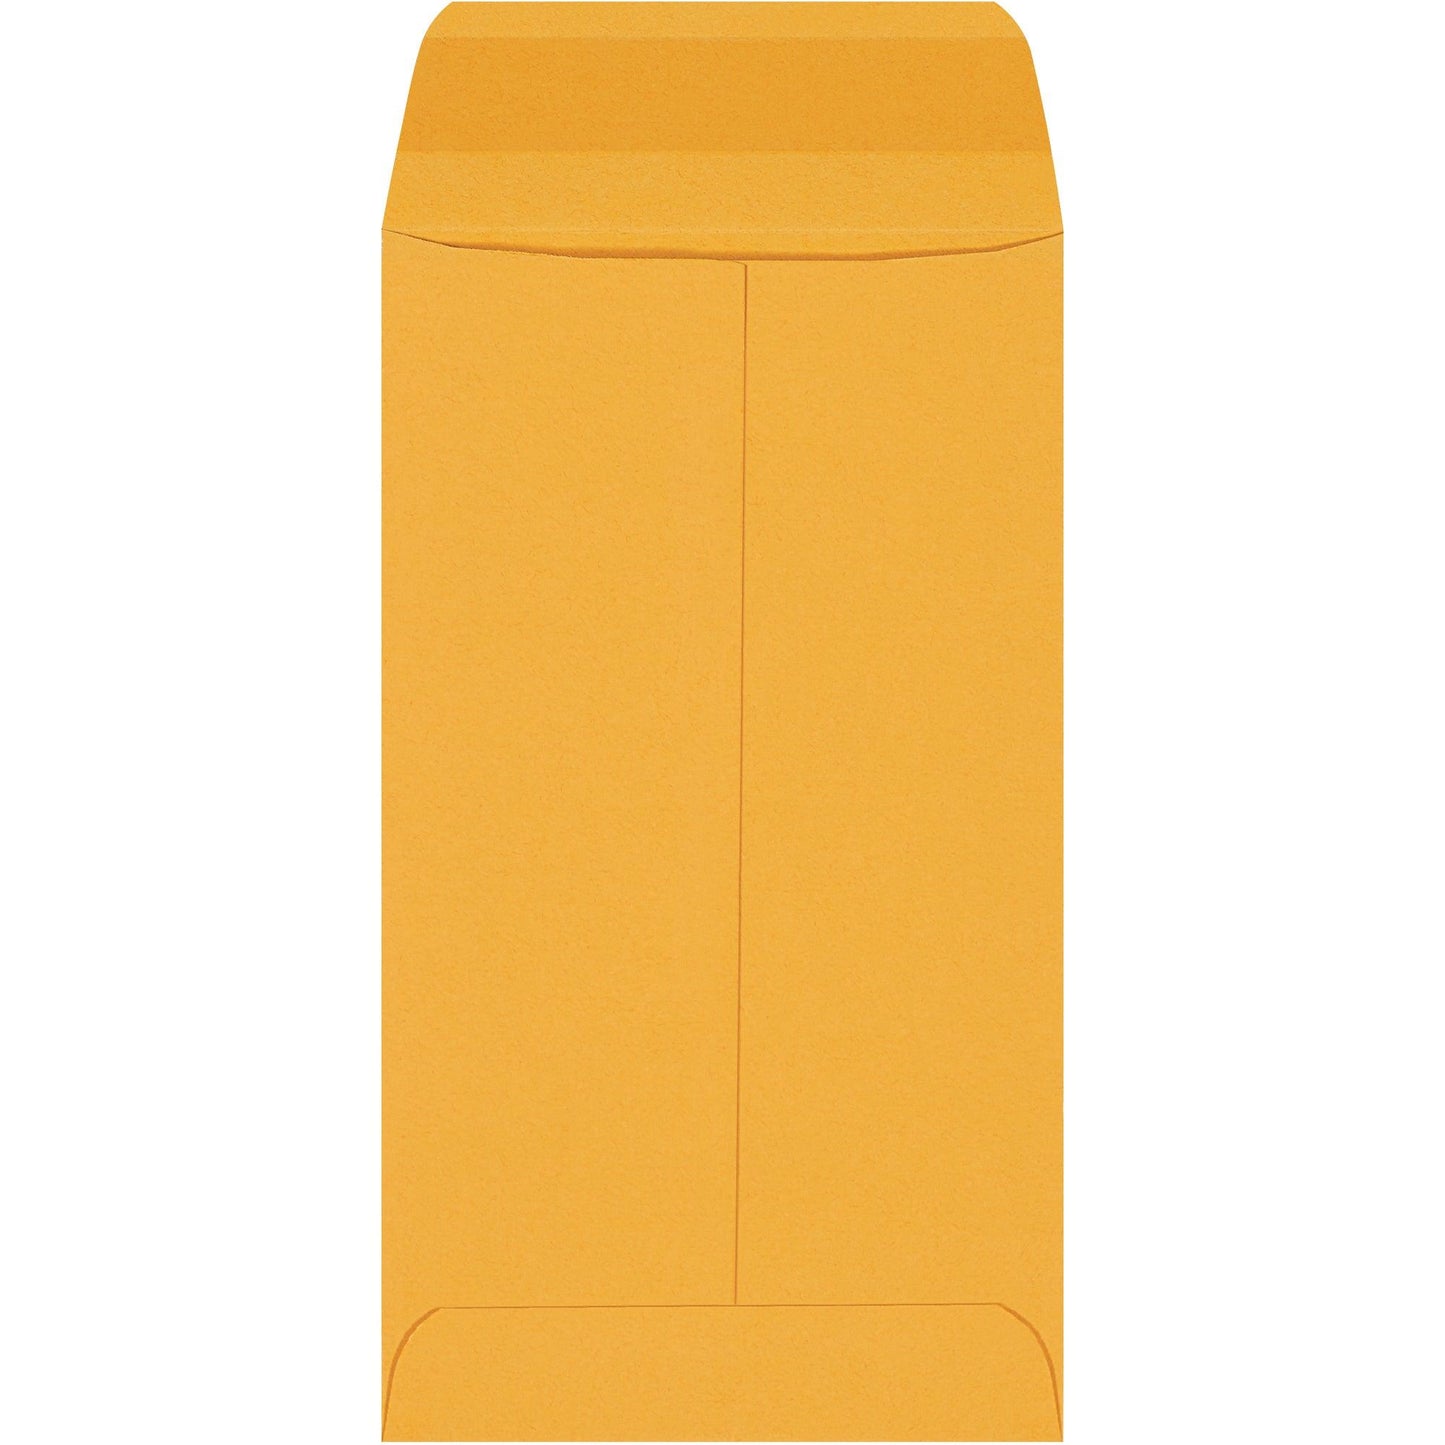 3 3/8 x 6" Kraft Gummed Envelopes - EN1038